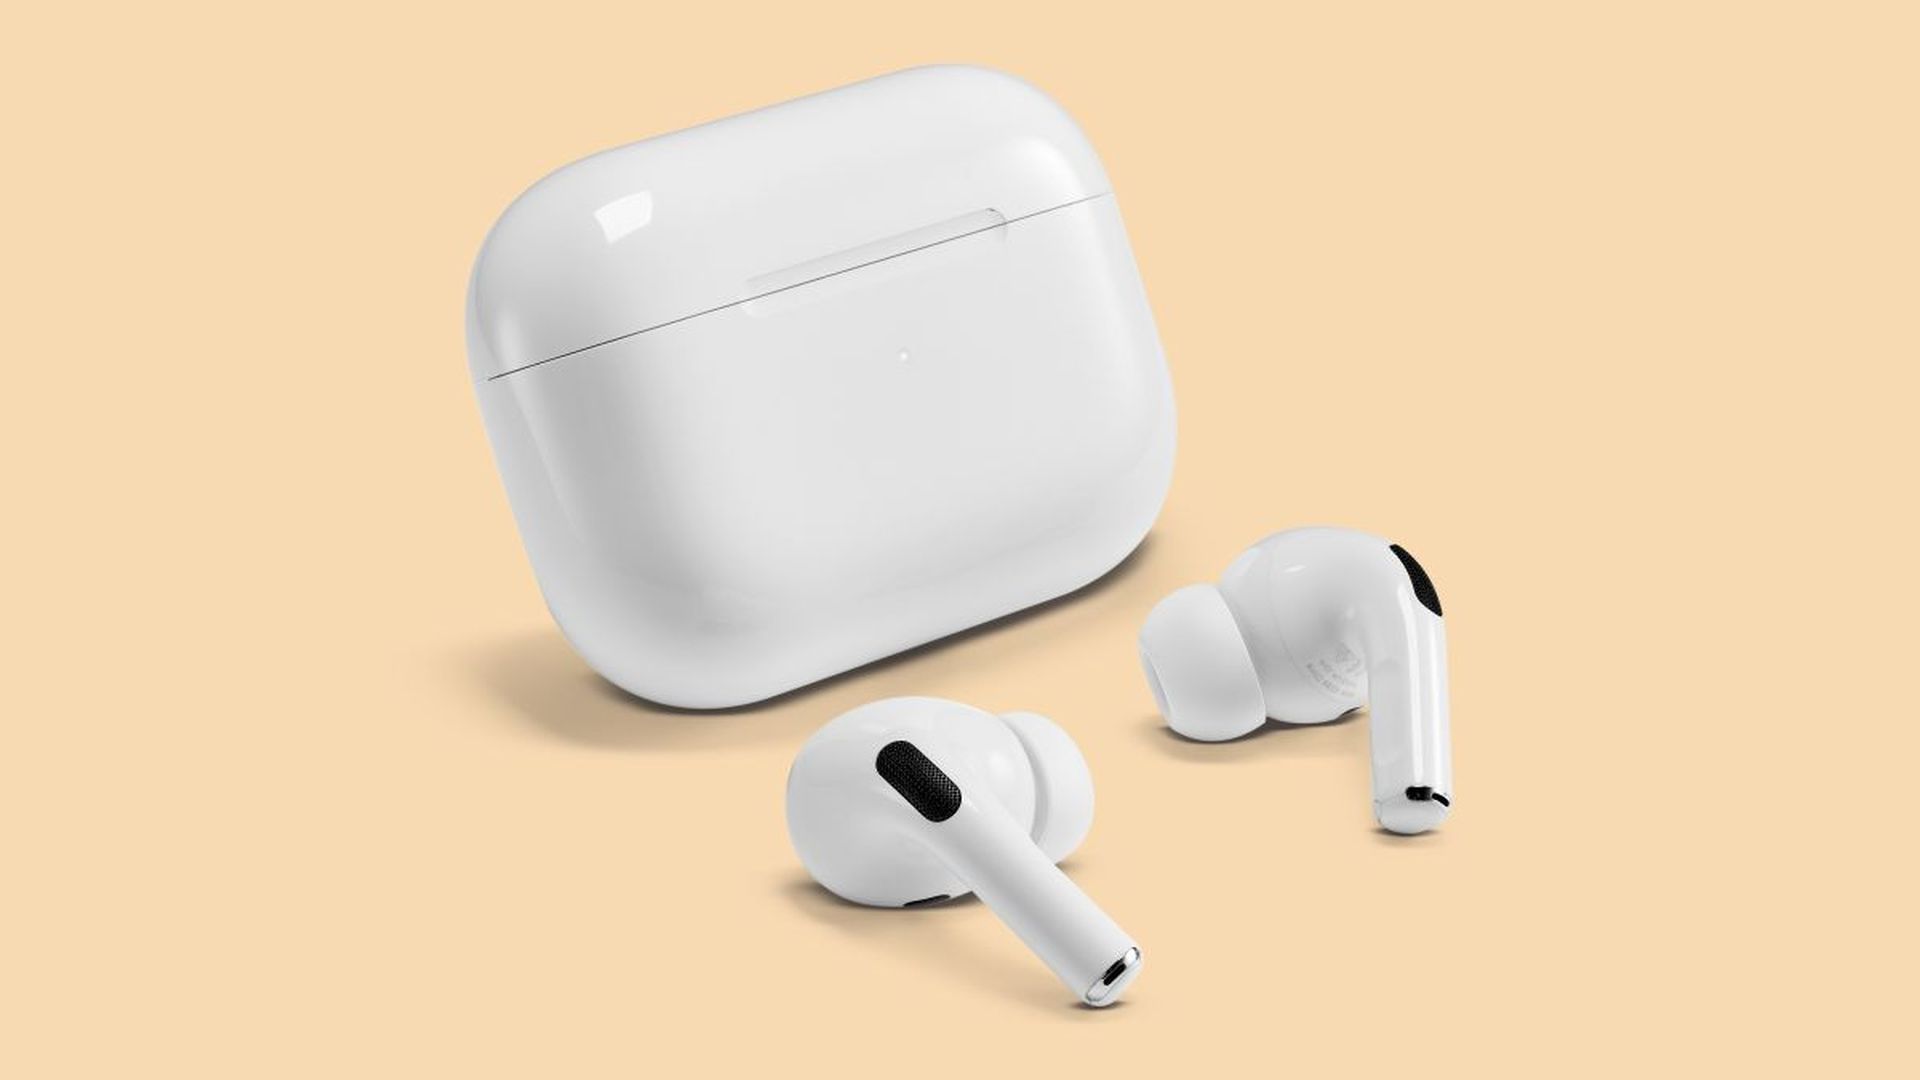 Tässä artikkelissa käsittelemme kuinka korjata iOS 16 AirPods ei toimi, jotta voit jatkaa kuulokkeiden käyttöä ilman ongelmia.